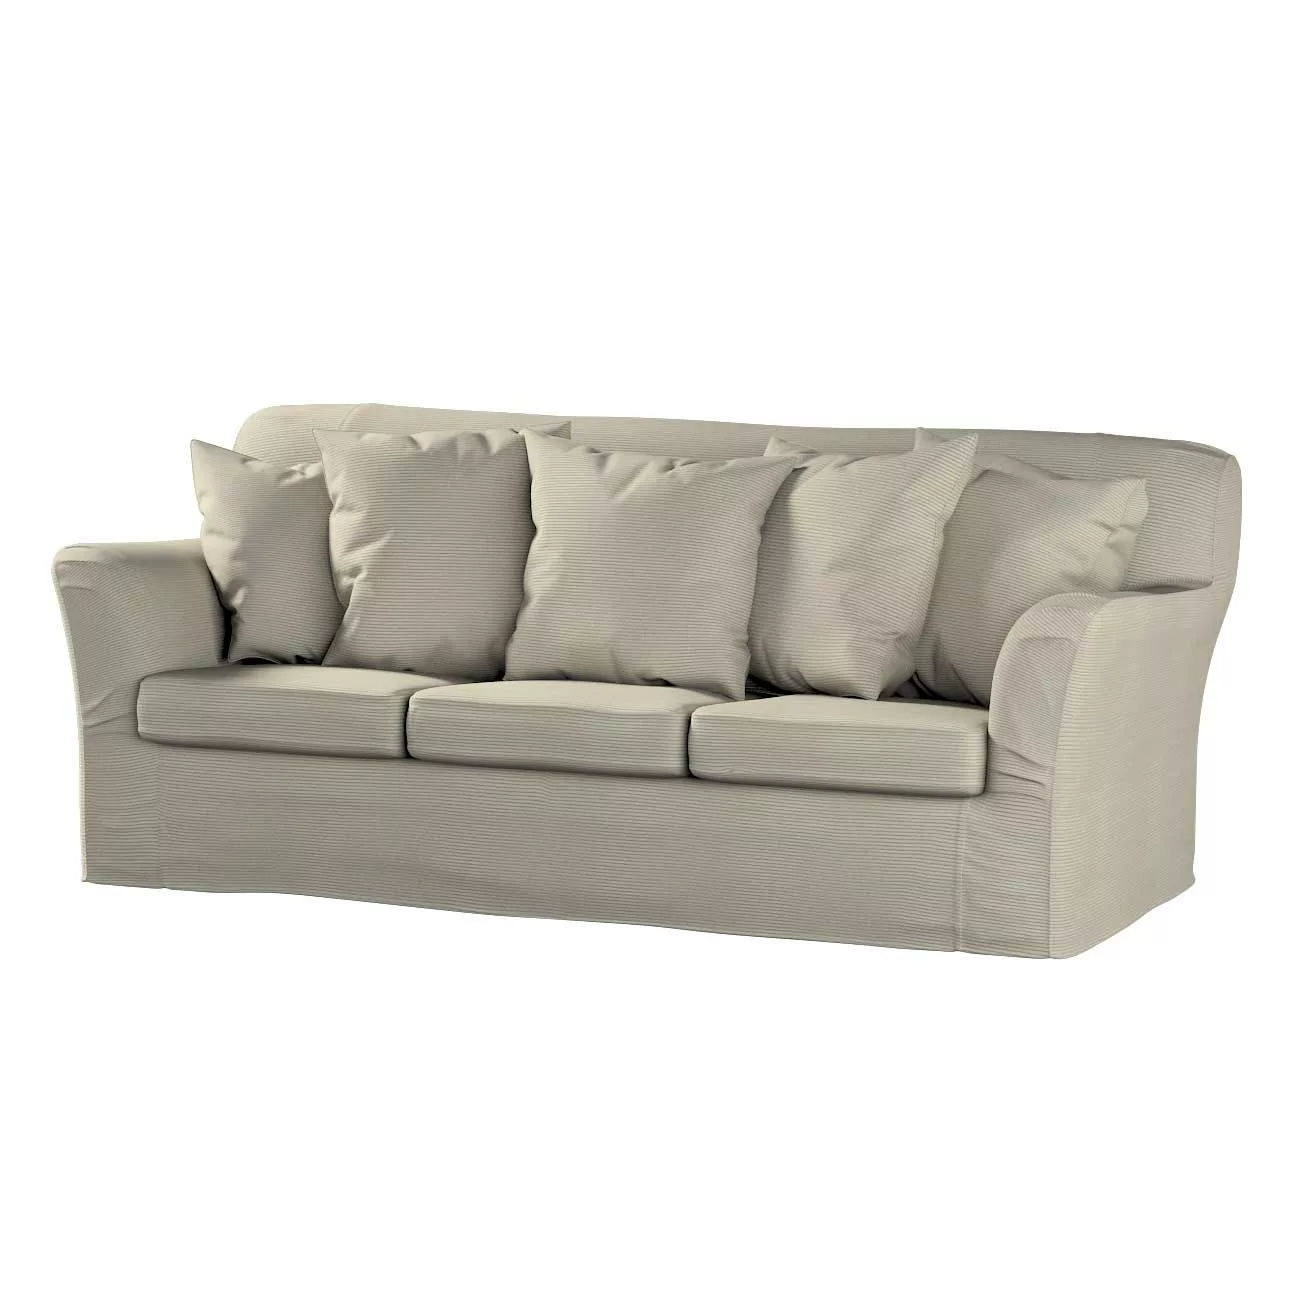 Bezug für Tomelilla 3-Sitzer Sofa nicht ausklappbar, grau, Sofahusse, Tomel günstig online kaufen